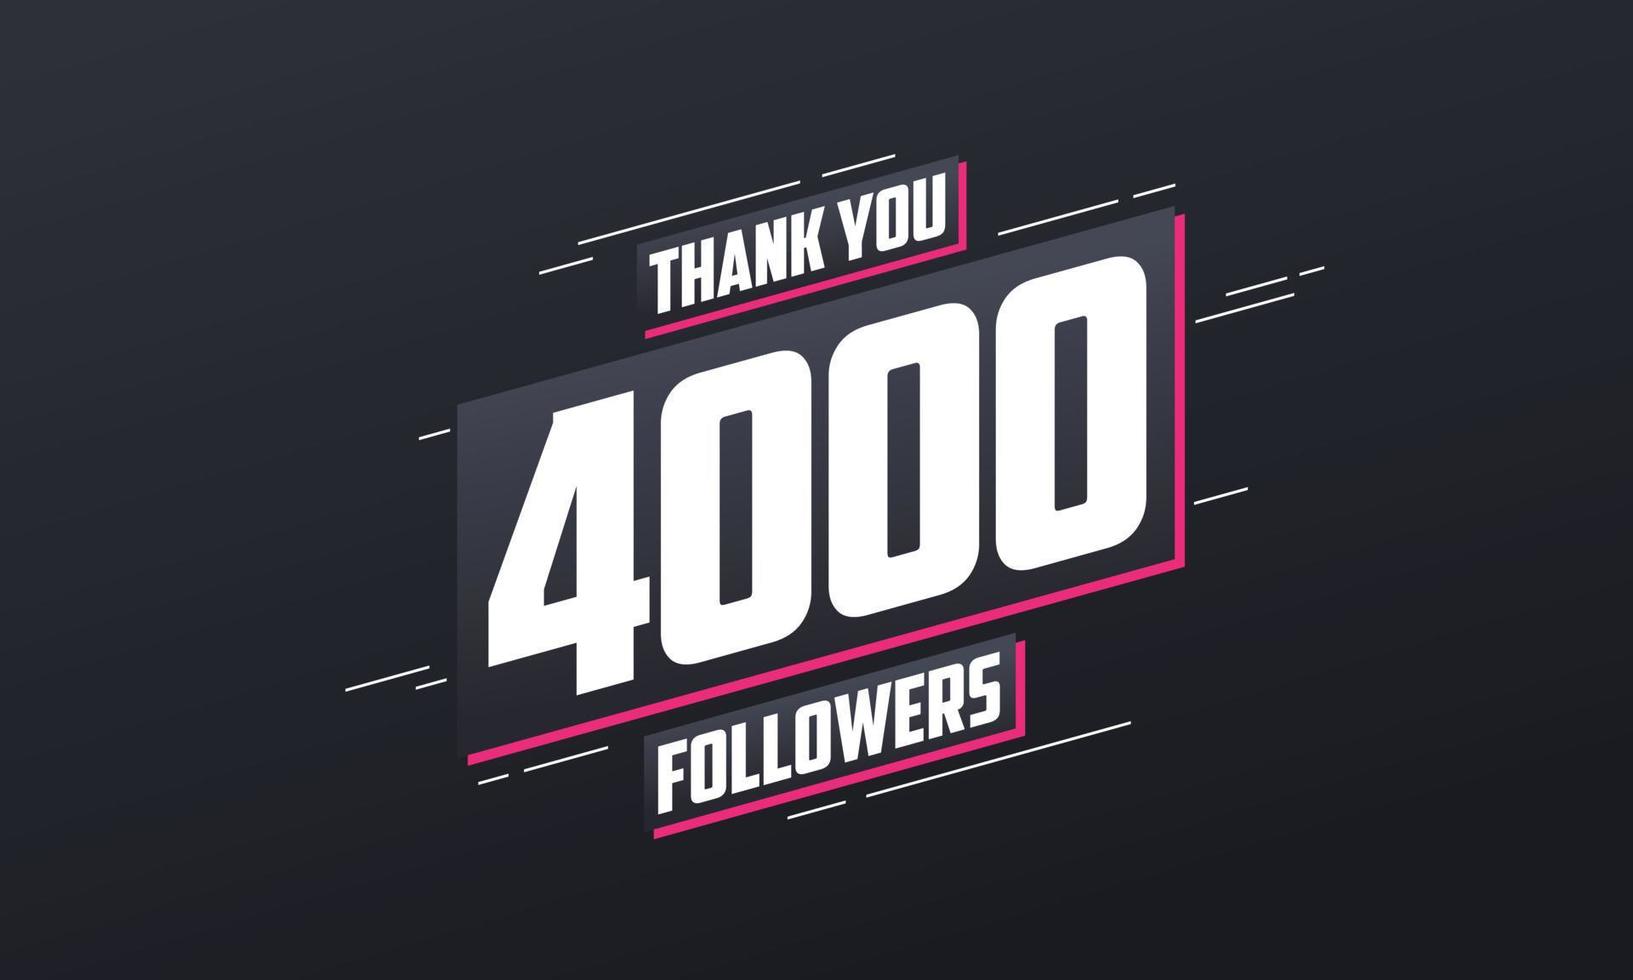 tack 4000 följare, mall för gratulationskort för sociala nätverk. vektor